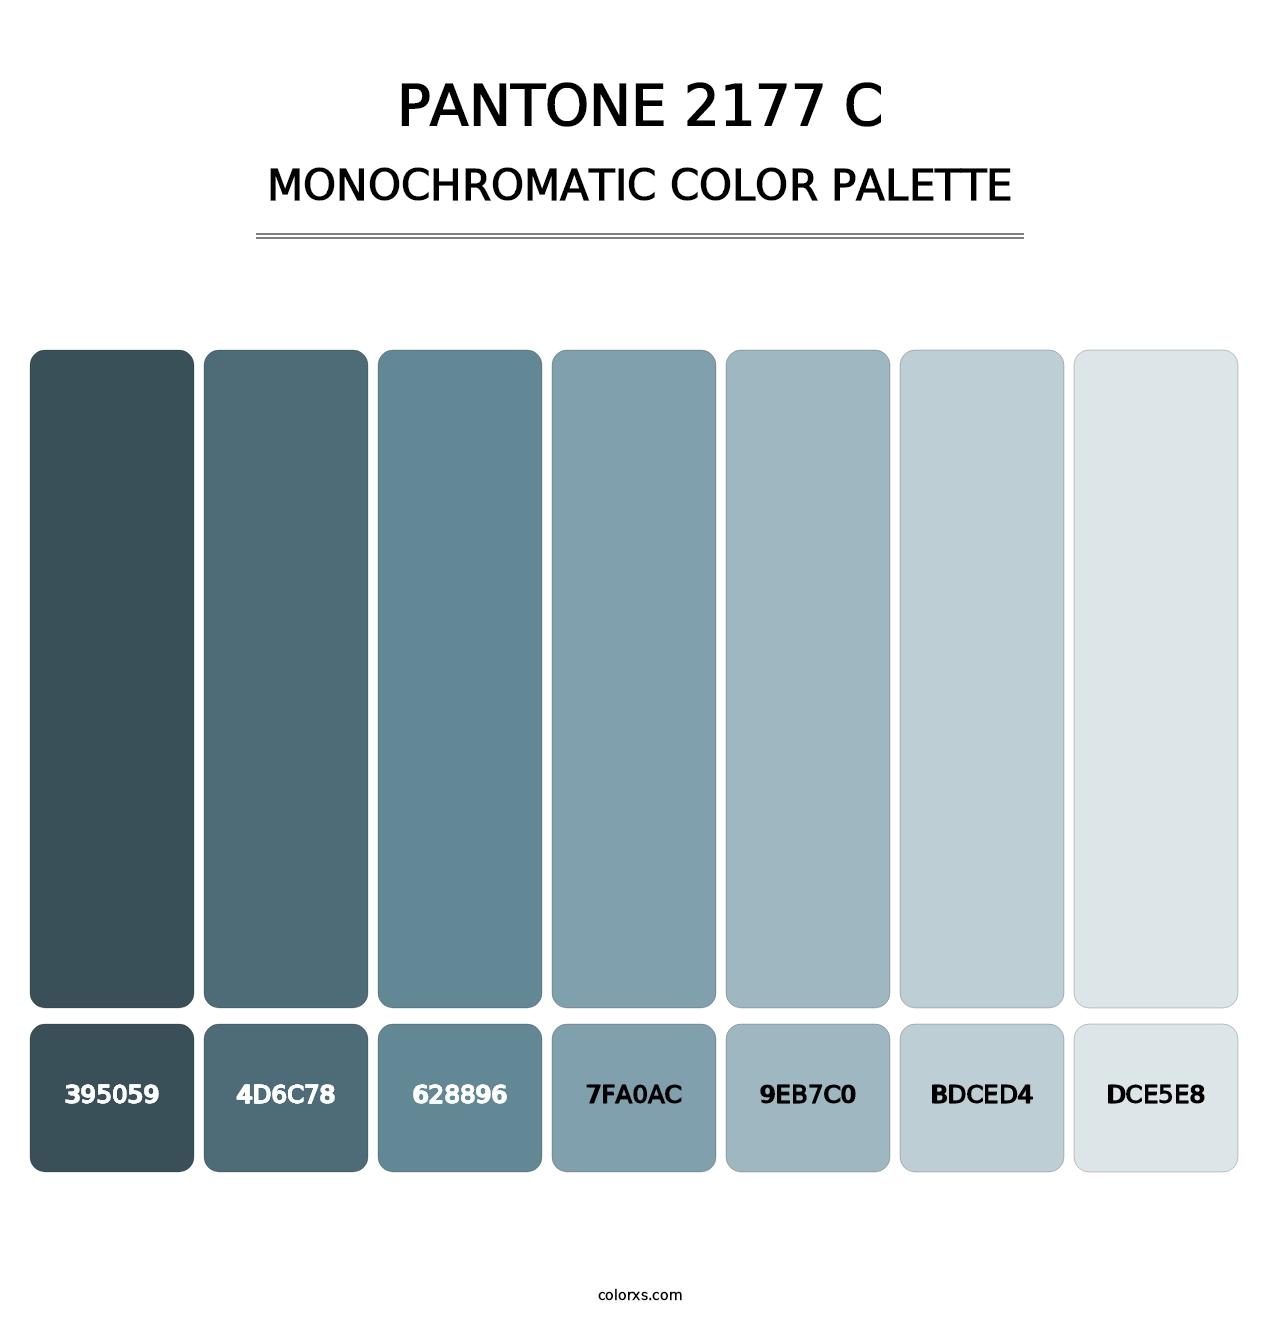 PANTONE 2177 C - Monochromatic Color Palette